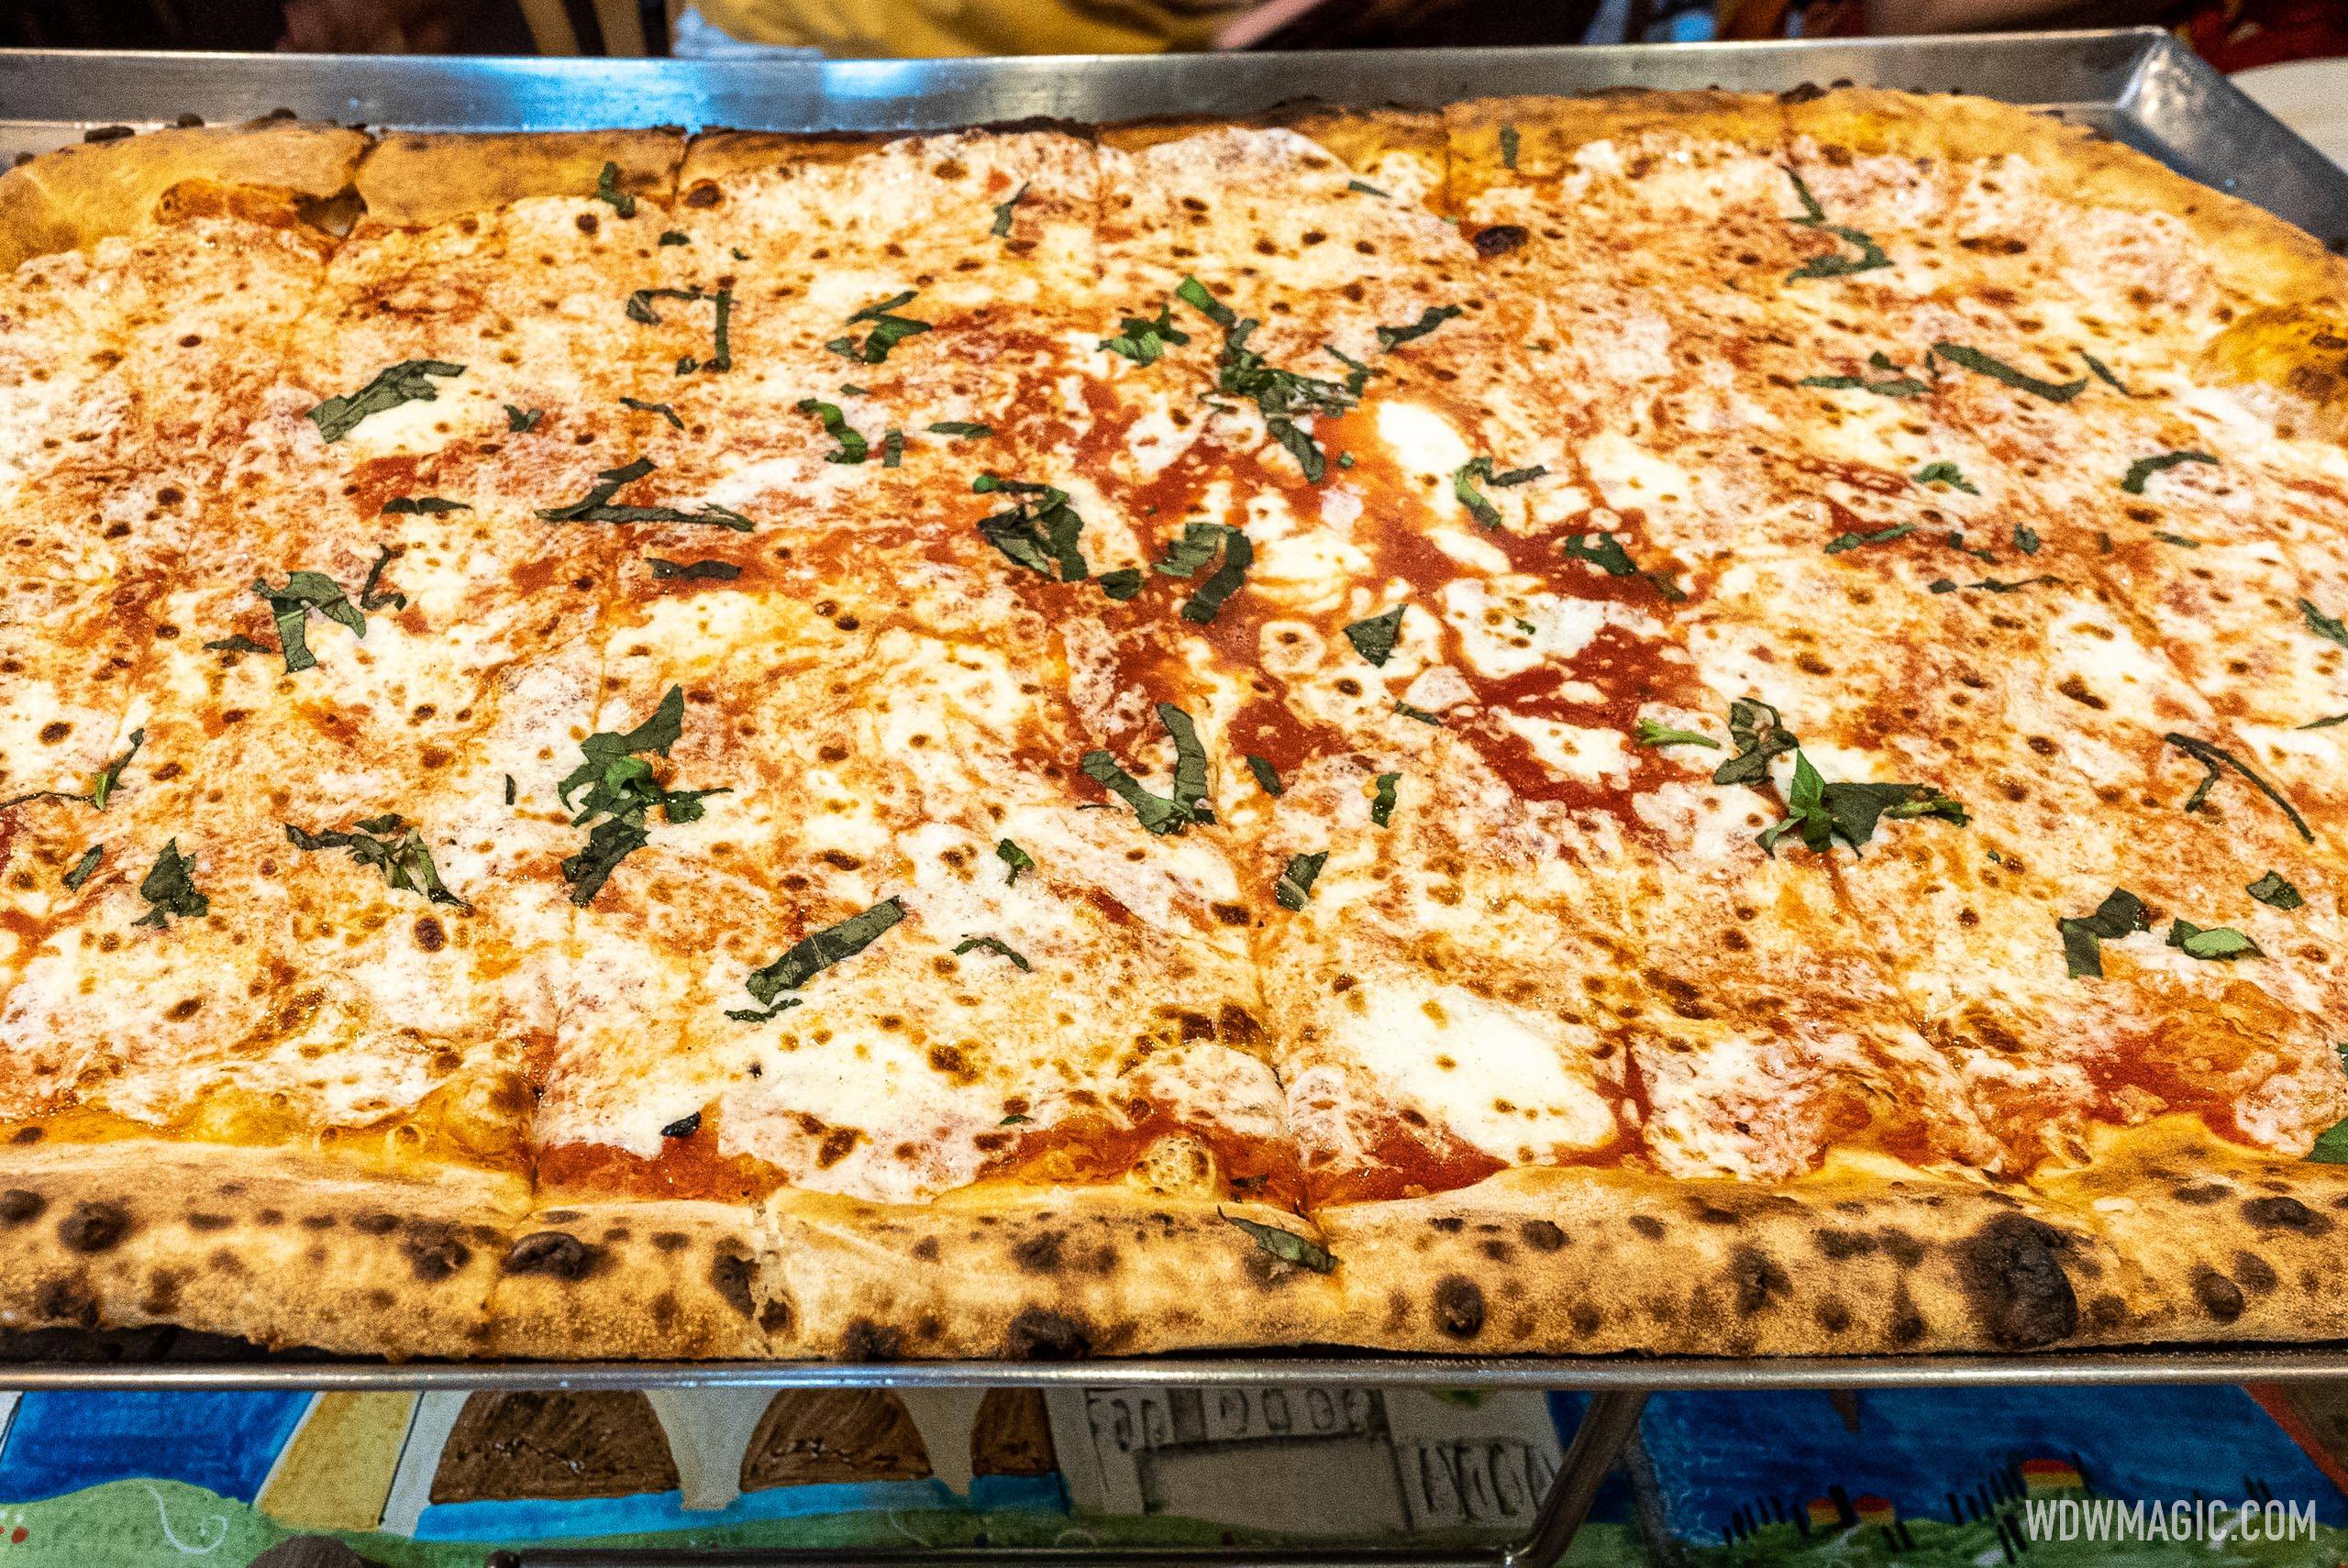 Via Napoli - Margherita Pizza - Pomadoro sauce, mozzarella cheese, basil